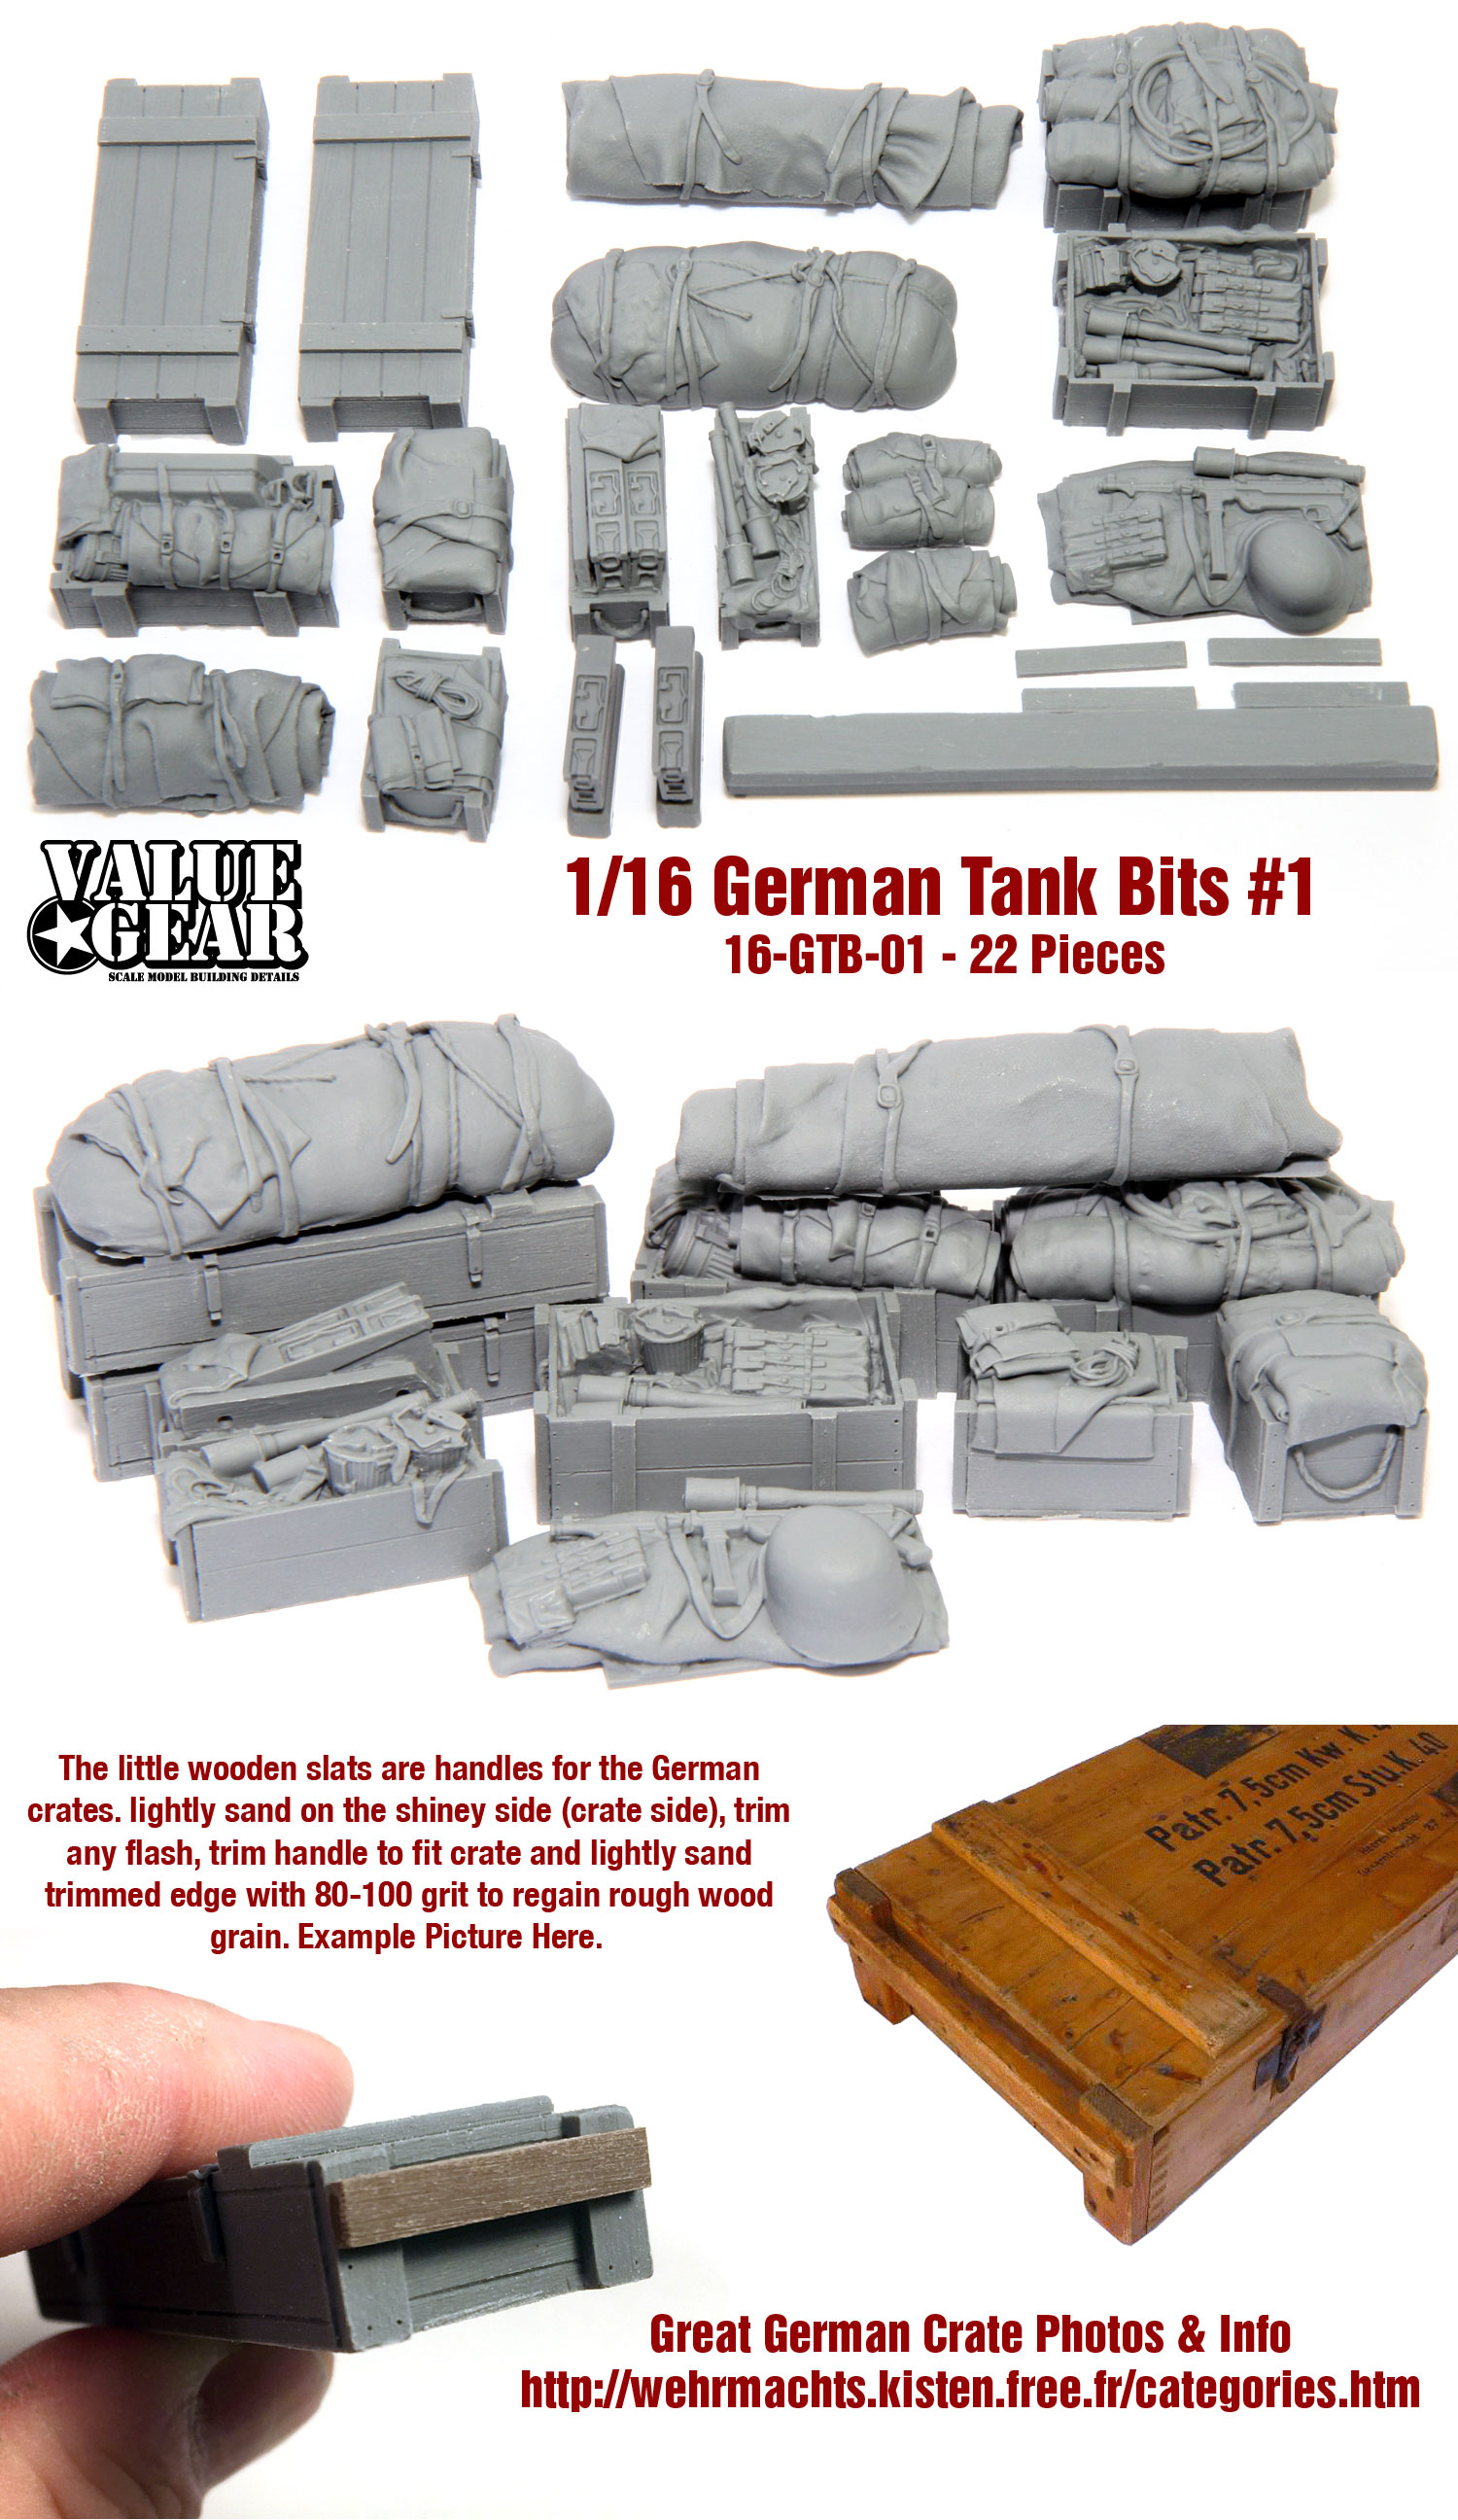 Value Gear 1/35 German STUG Wooden Storage Box STB07